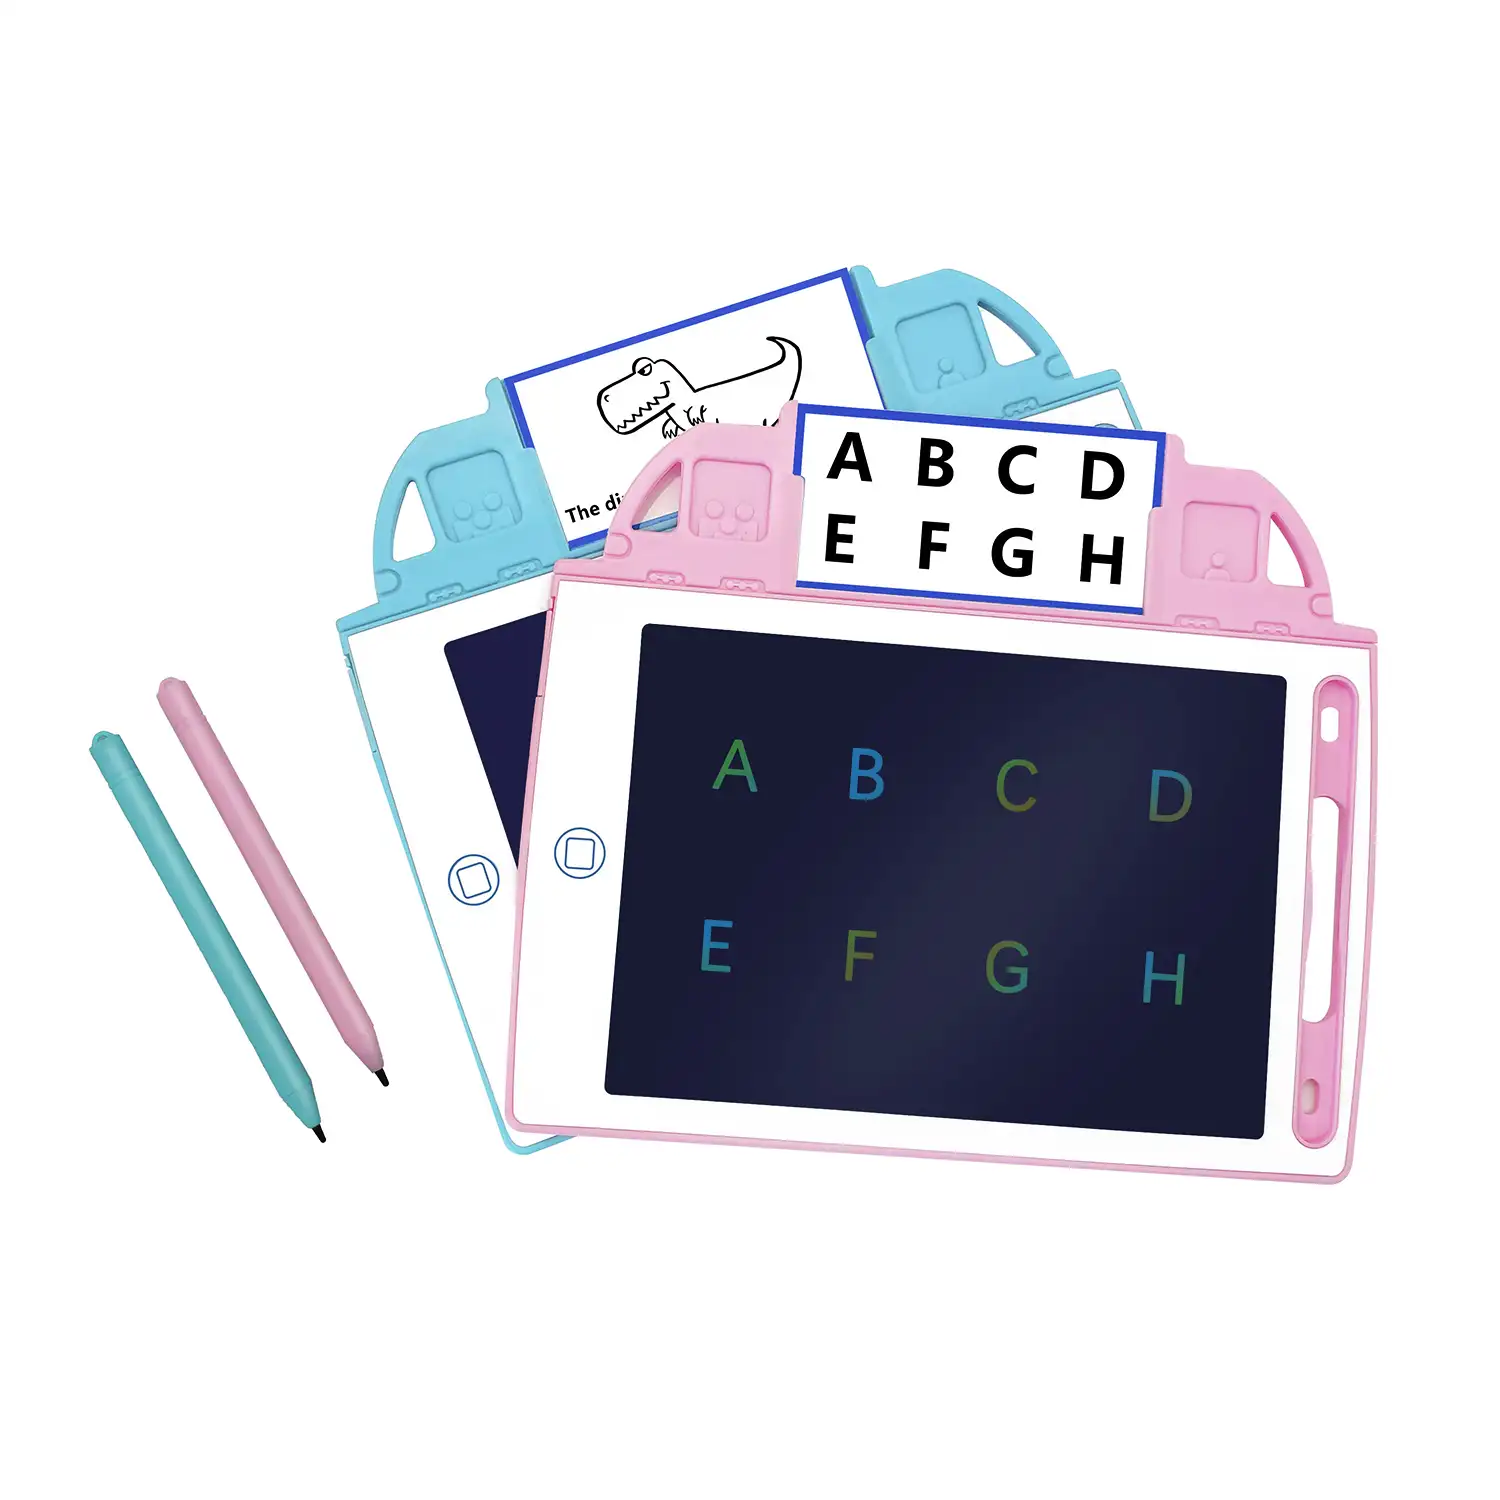 Tableta de dibujo y escritura LCD de 8,4 pulgadas, fondo multicolor. Portátil, con bloqueo de borrado. Incluye tarjetas de aprendizaje para escribir y dibujar.